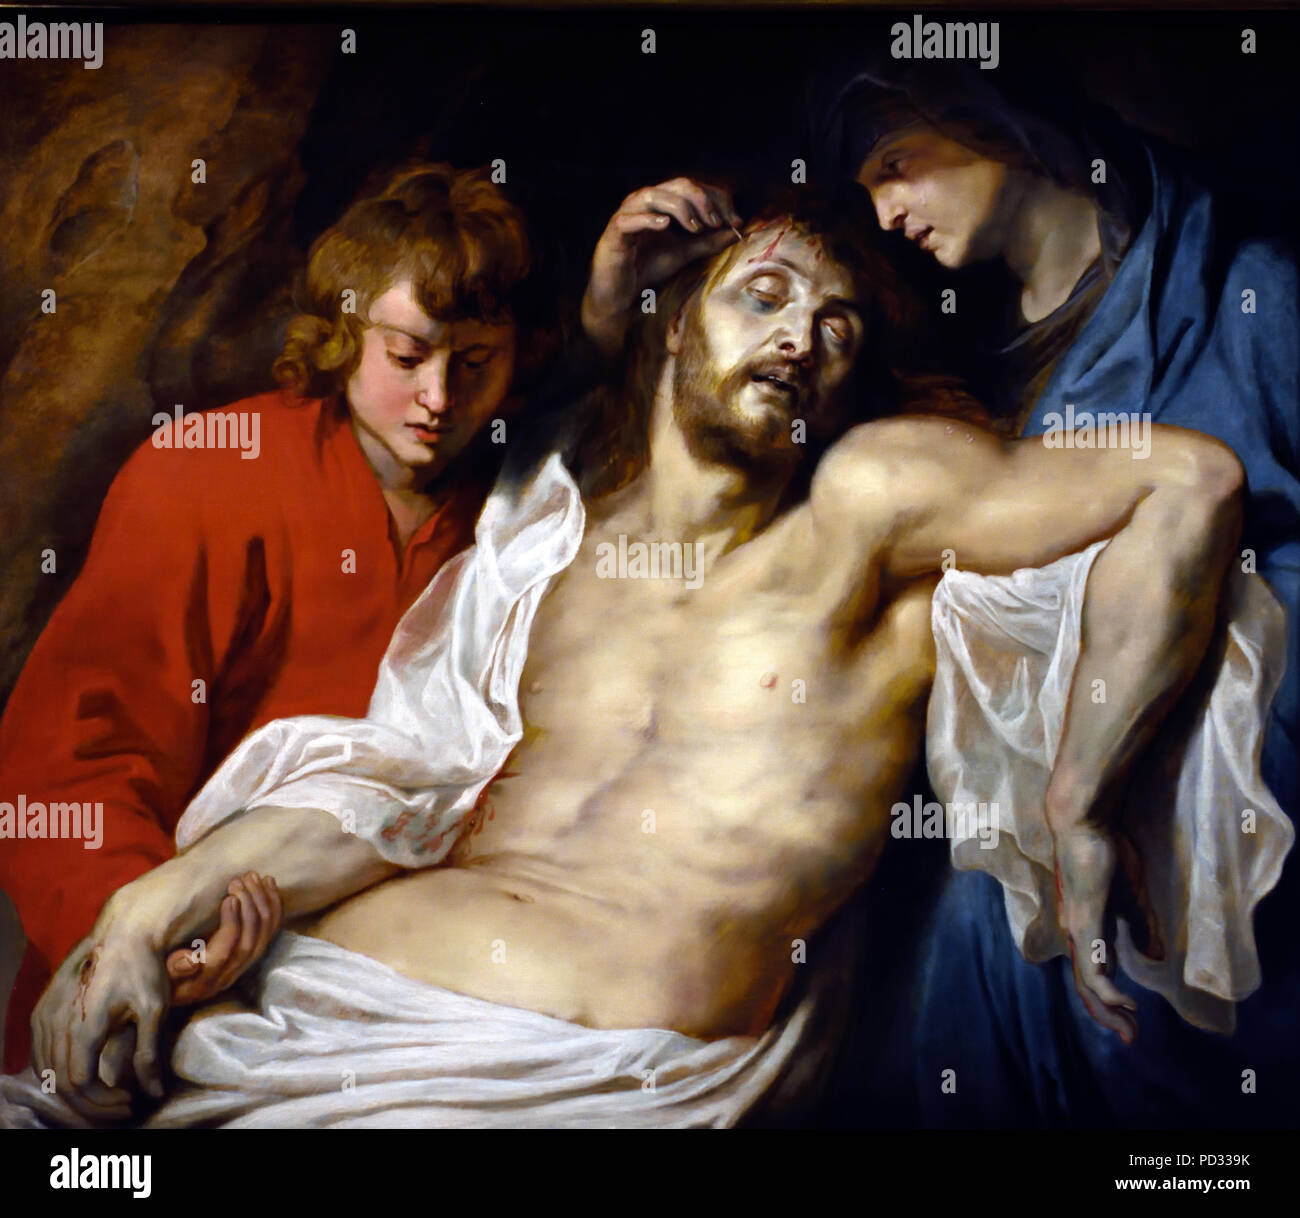 Lamentation du Christ par la Vierge Marie et St John 1614-15 de Peter Paul Rubens (1577-1640) Belgique belge flamande Banque D'Images